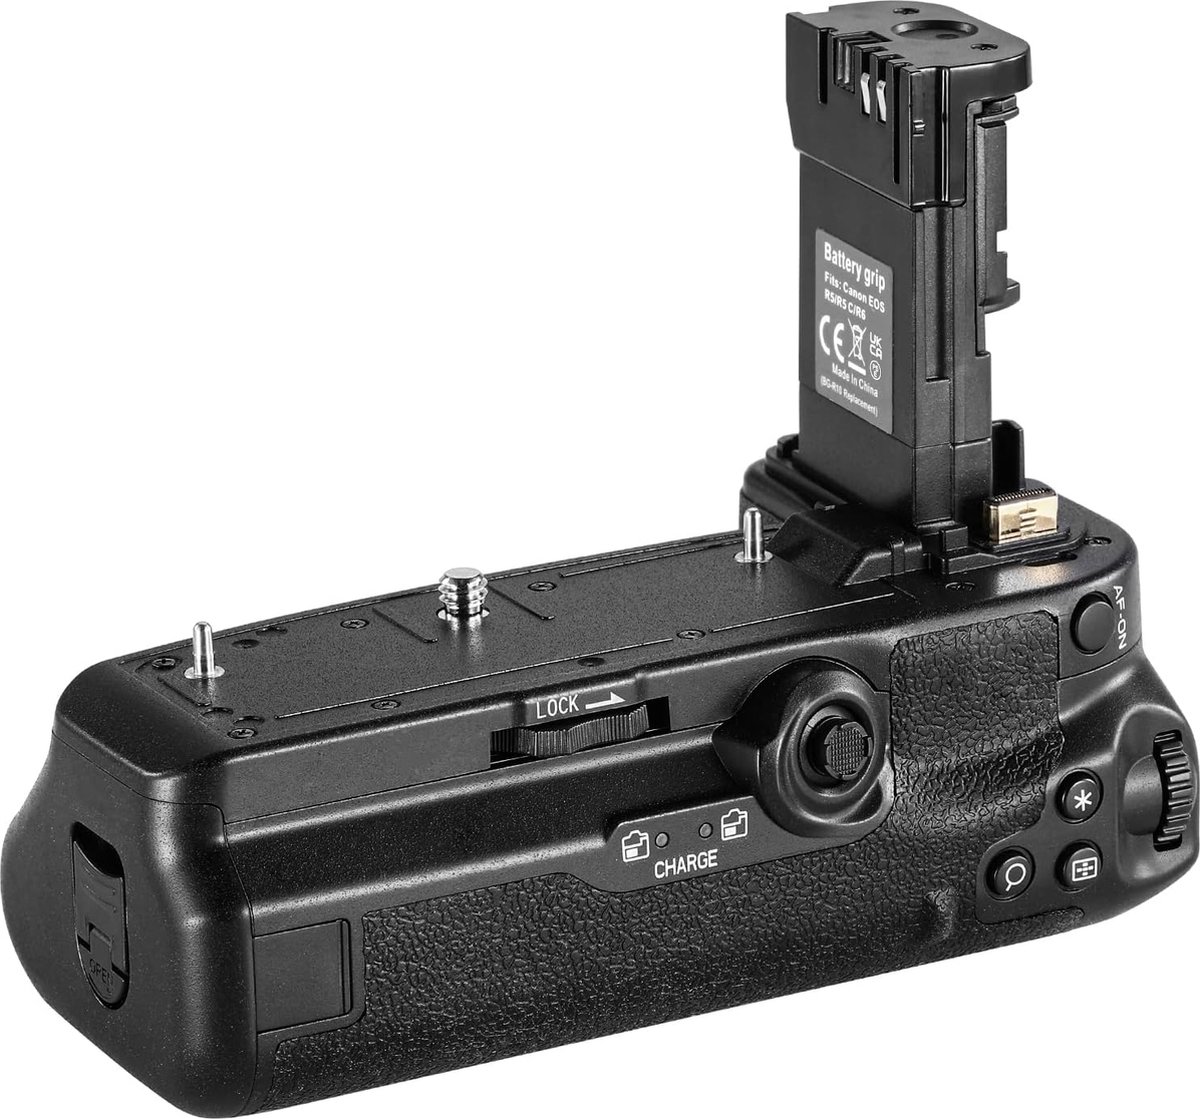 Neewer® - Batterijgreep, vervanging voor BG-R10, compatibel met Canon EOS R5 R5C R6 R6 Mark II mirrorless camera's - Gevoed door LP-E6/LP-E6N/LP-E6NH batterijen voor stabiele verticale fotografie